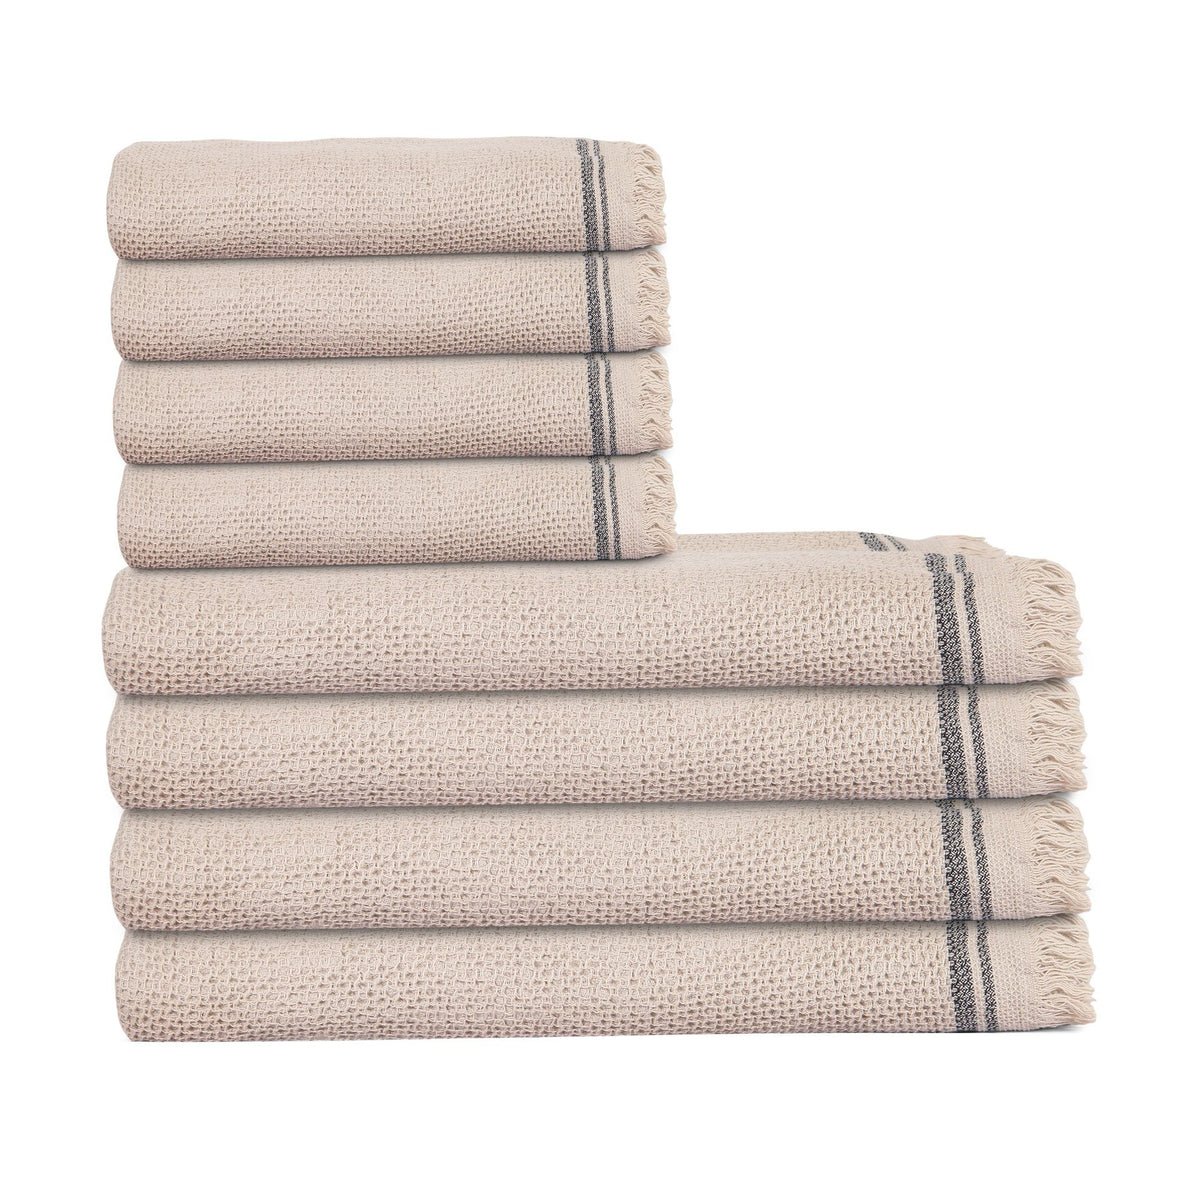 Lush Loom Turkish Towel Bundle